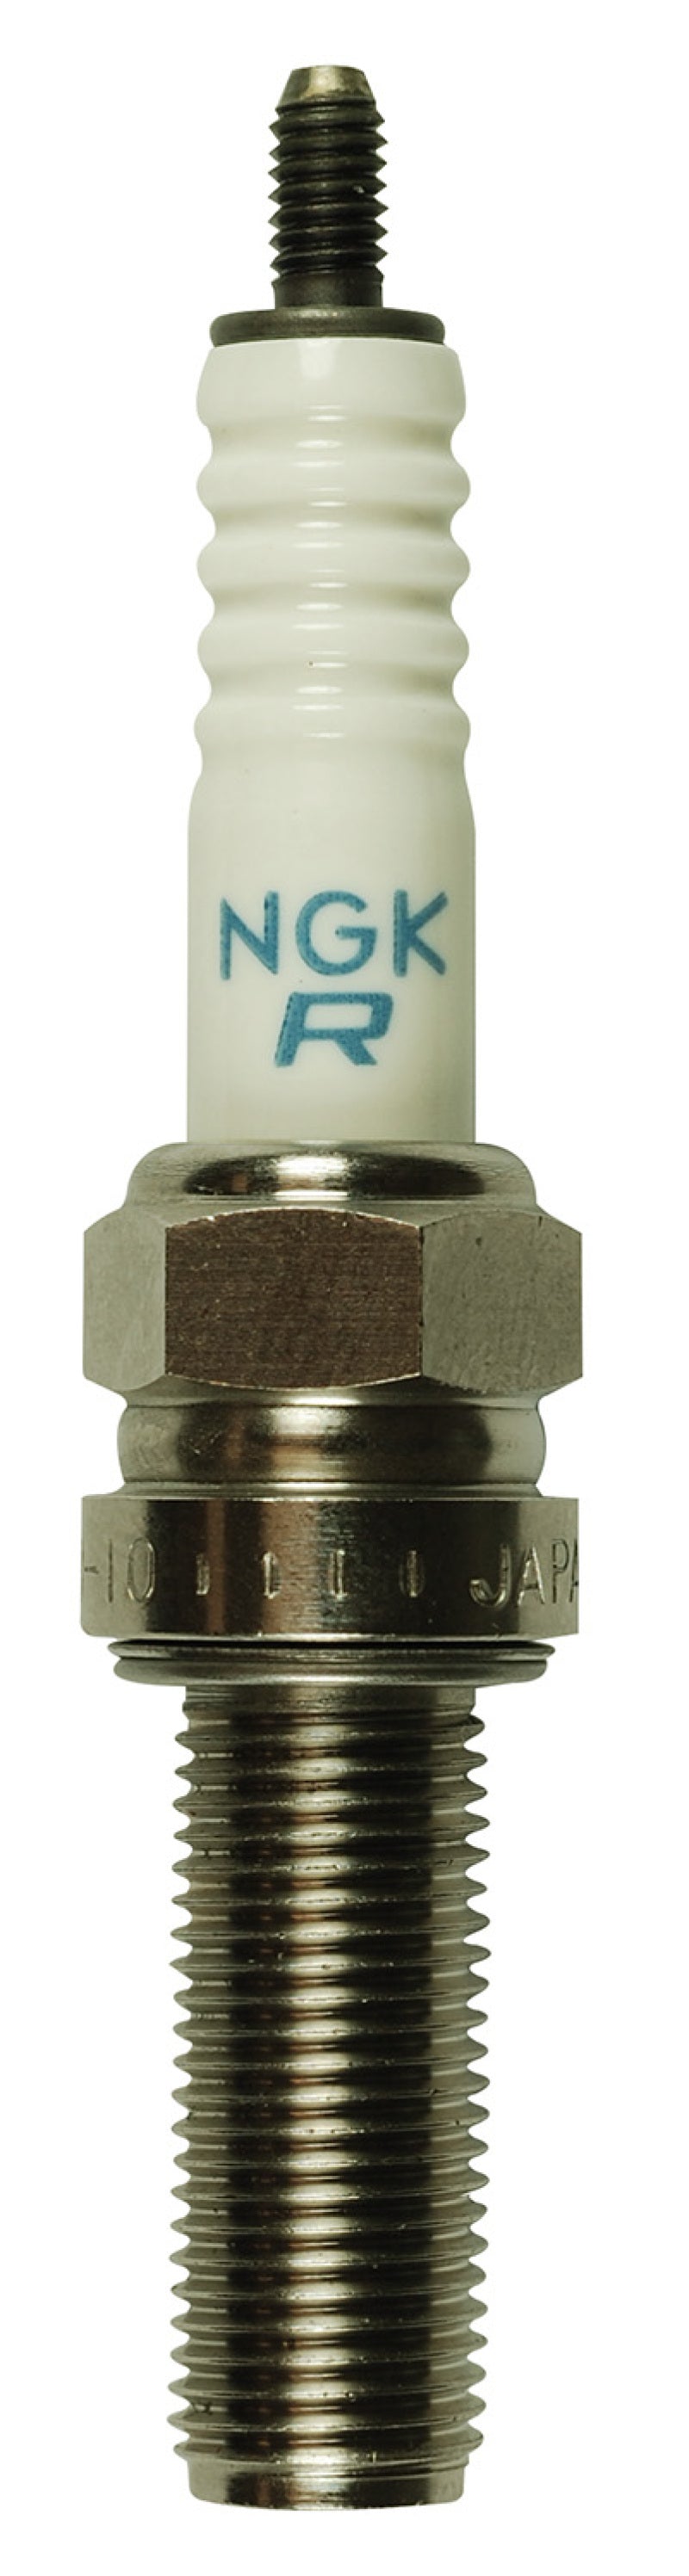 NGK Racing Spark Plug Box of 4 (R0465B-10)